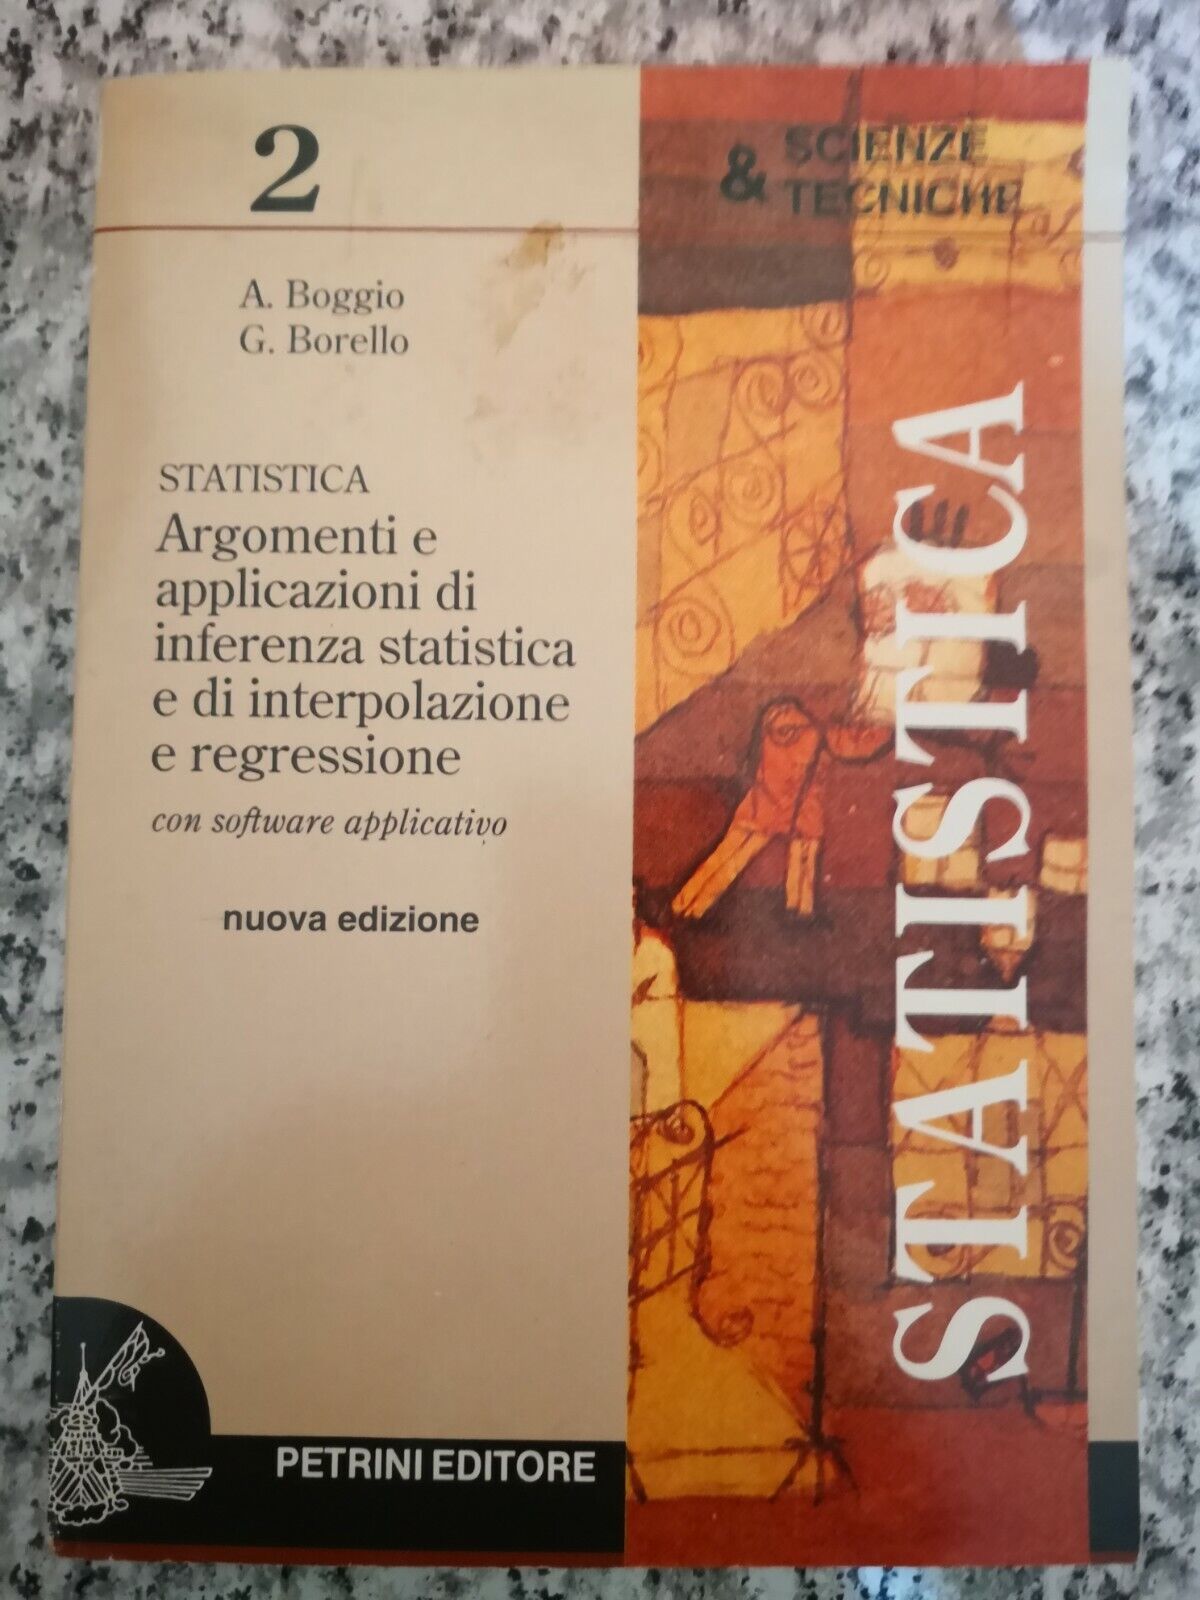  Statistica Scienze e tecniche 2  di A. Boggio , G. Borello, 1988, Pietrini -F